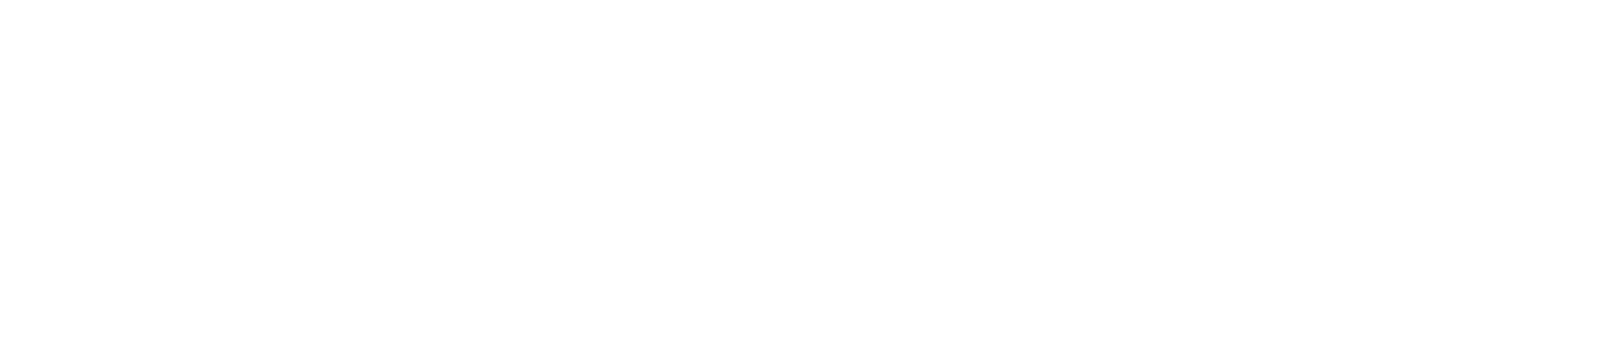 abrdn ETF logo large for dark backgrounds (transparent PNG)